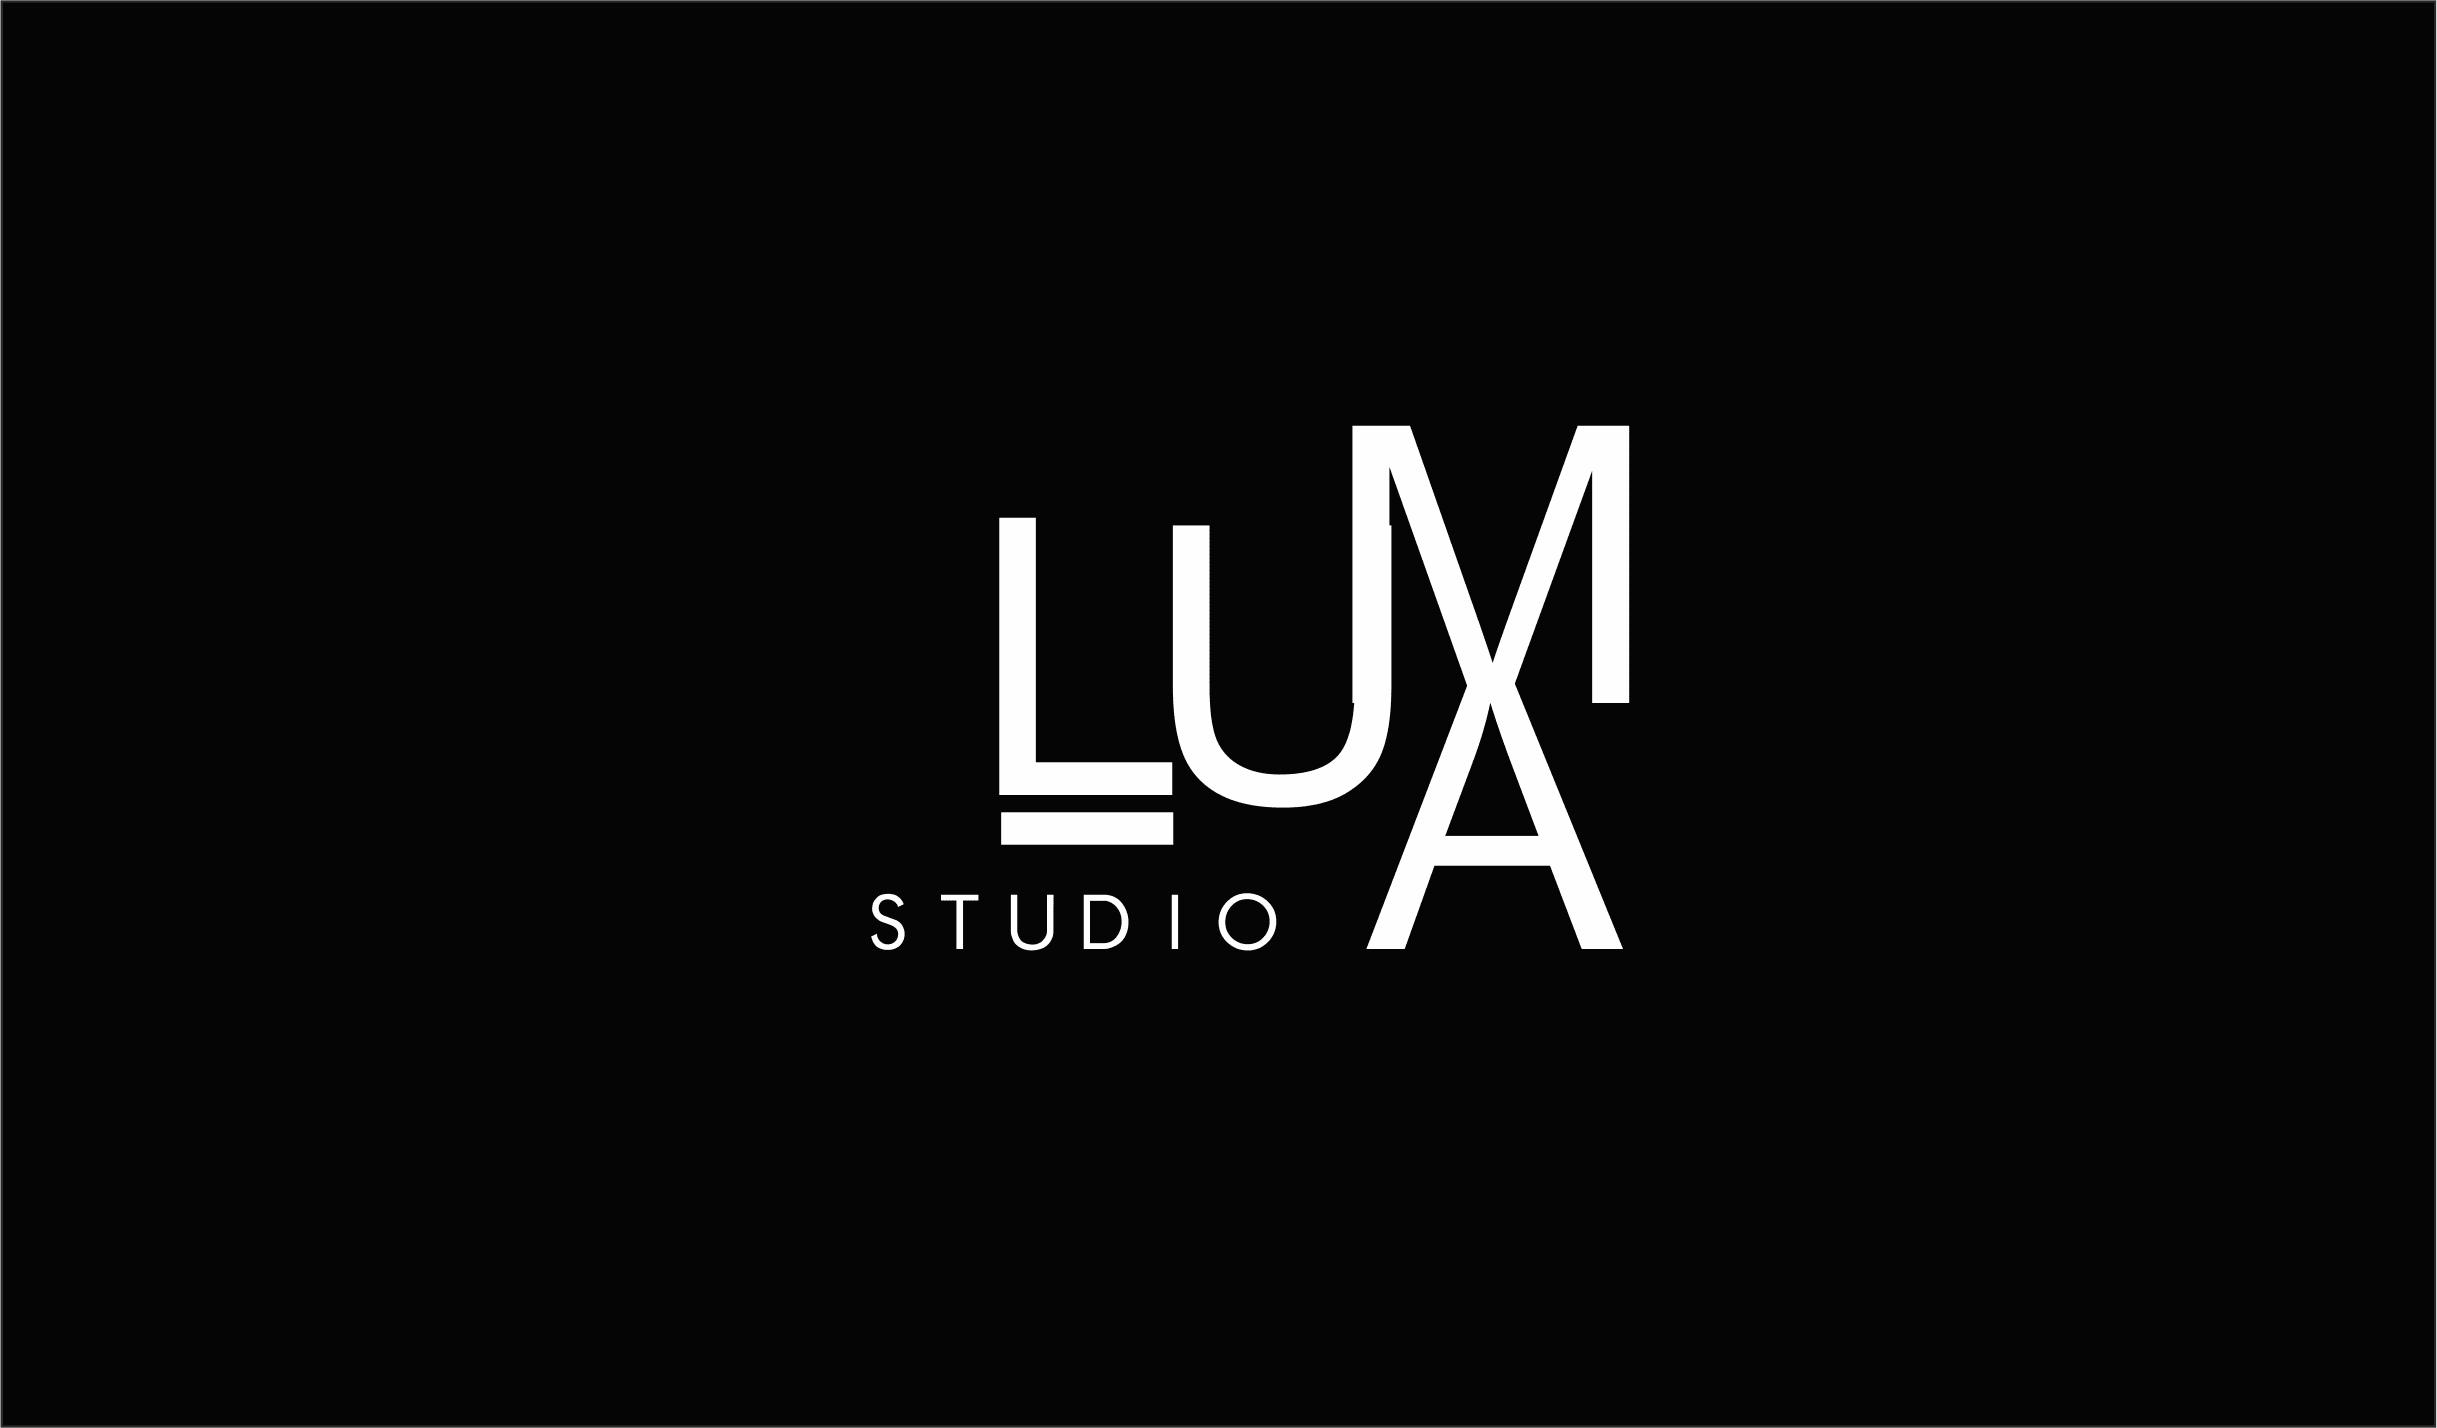 LUMA Studio